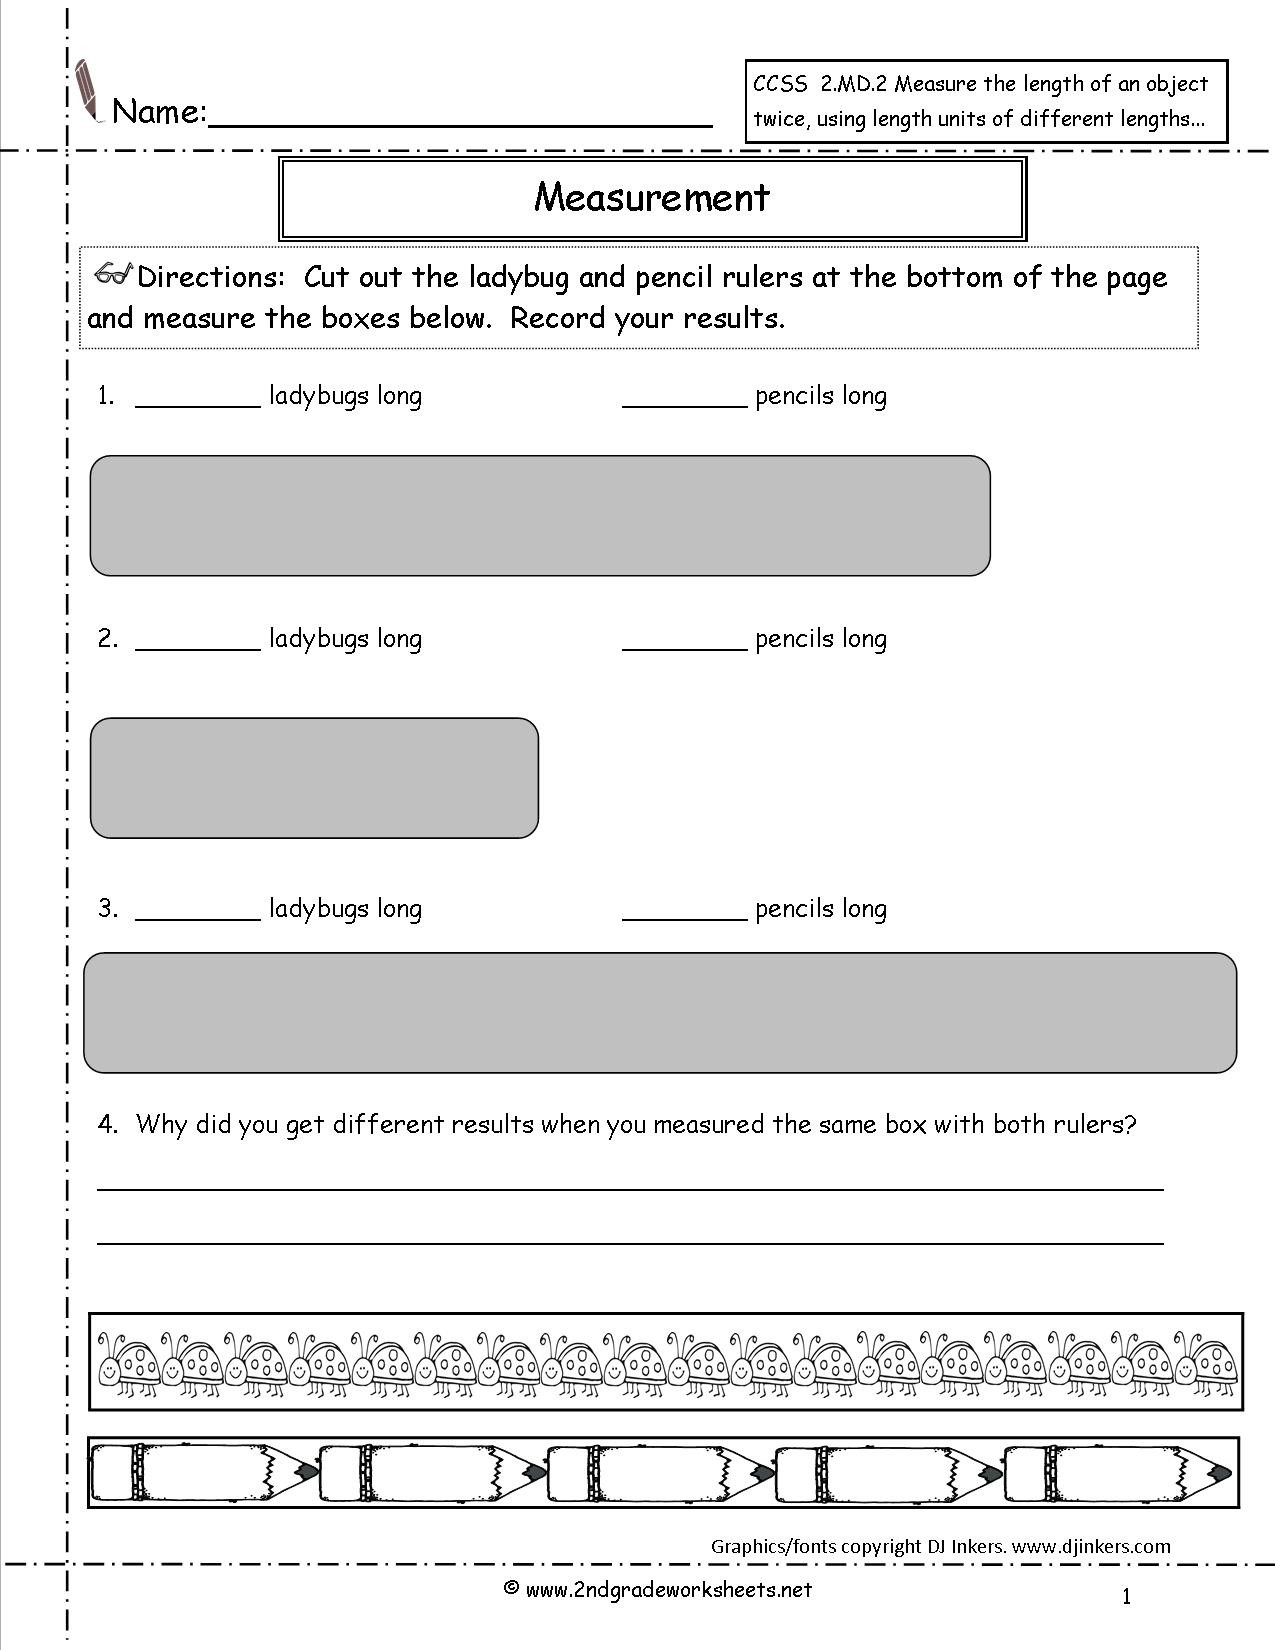 2nd Grade Measurement Worksheet Ccss 2 Md 2 Worksheets Measuring and Estimating Lengths